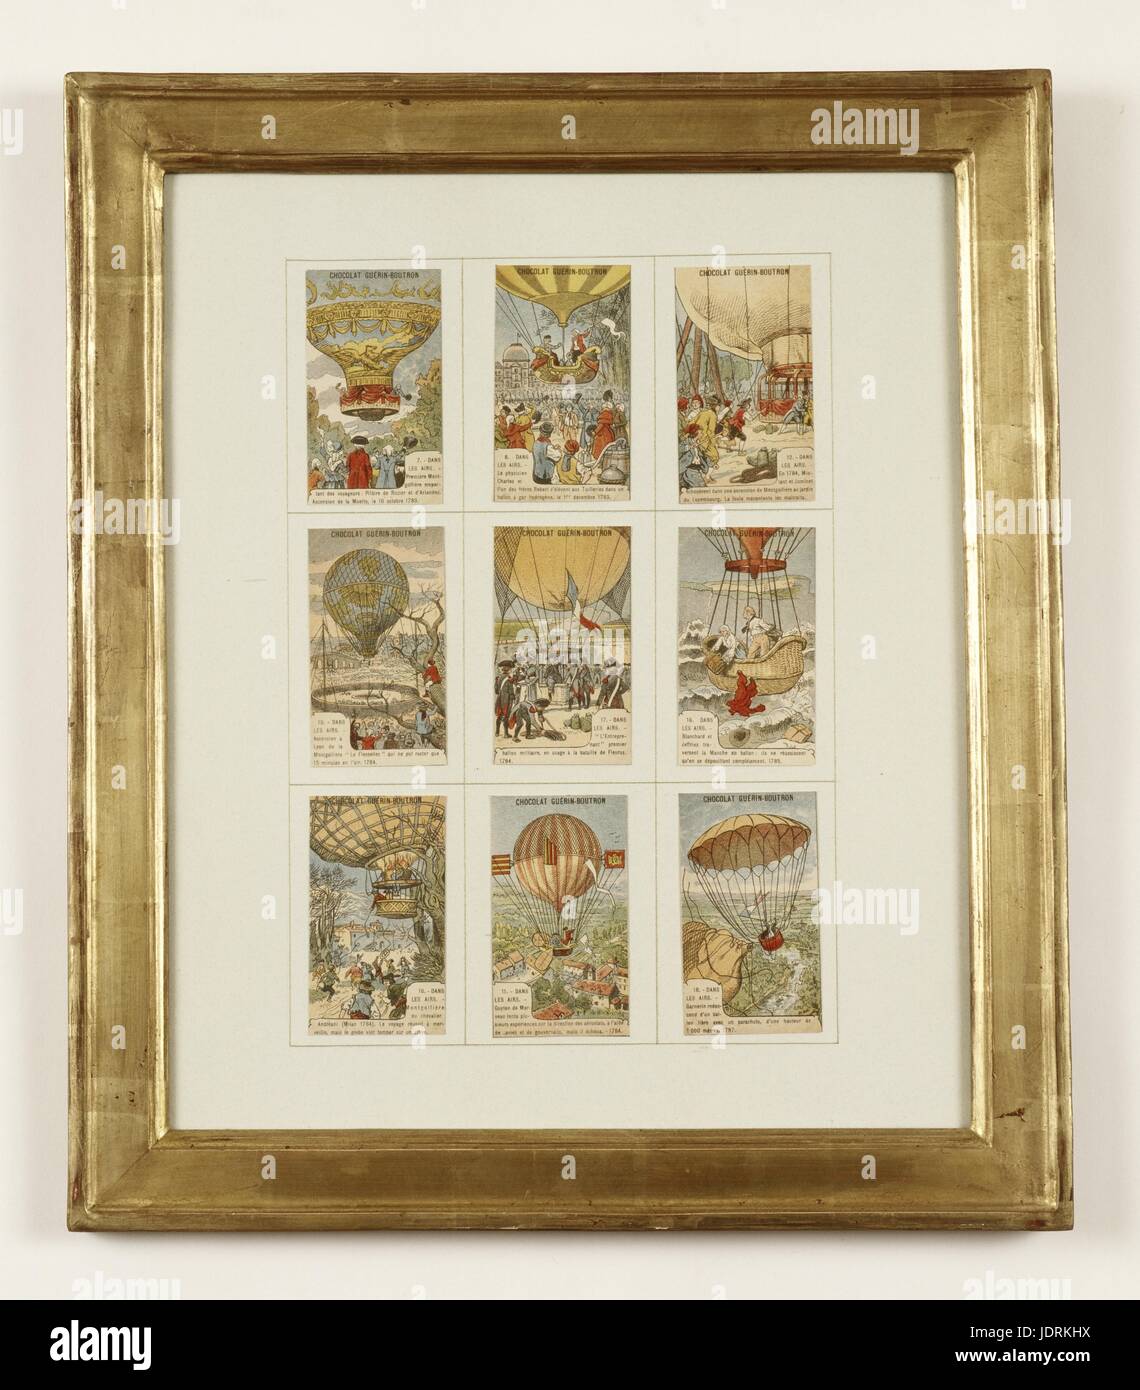 Pubblicità etichette per Guérin-Boutron cioccolatini, segnando i primi esperimenti aerostatico incorniciato raccolta di stampe di cromo (51 x 48 cm) Muller-Quênot Collection Foto Stock